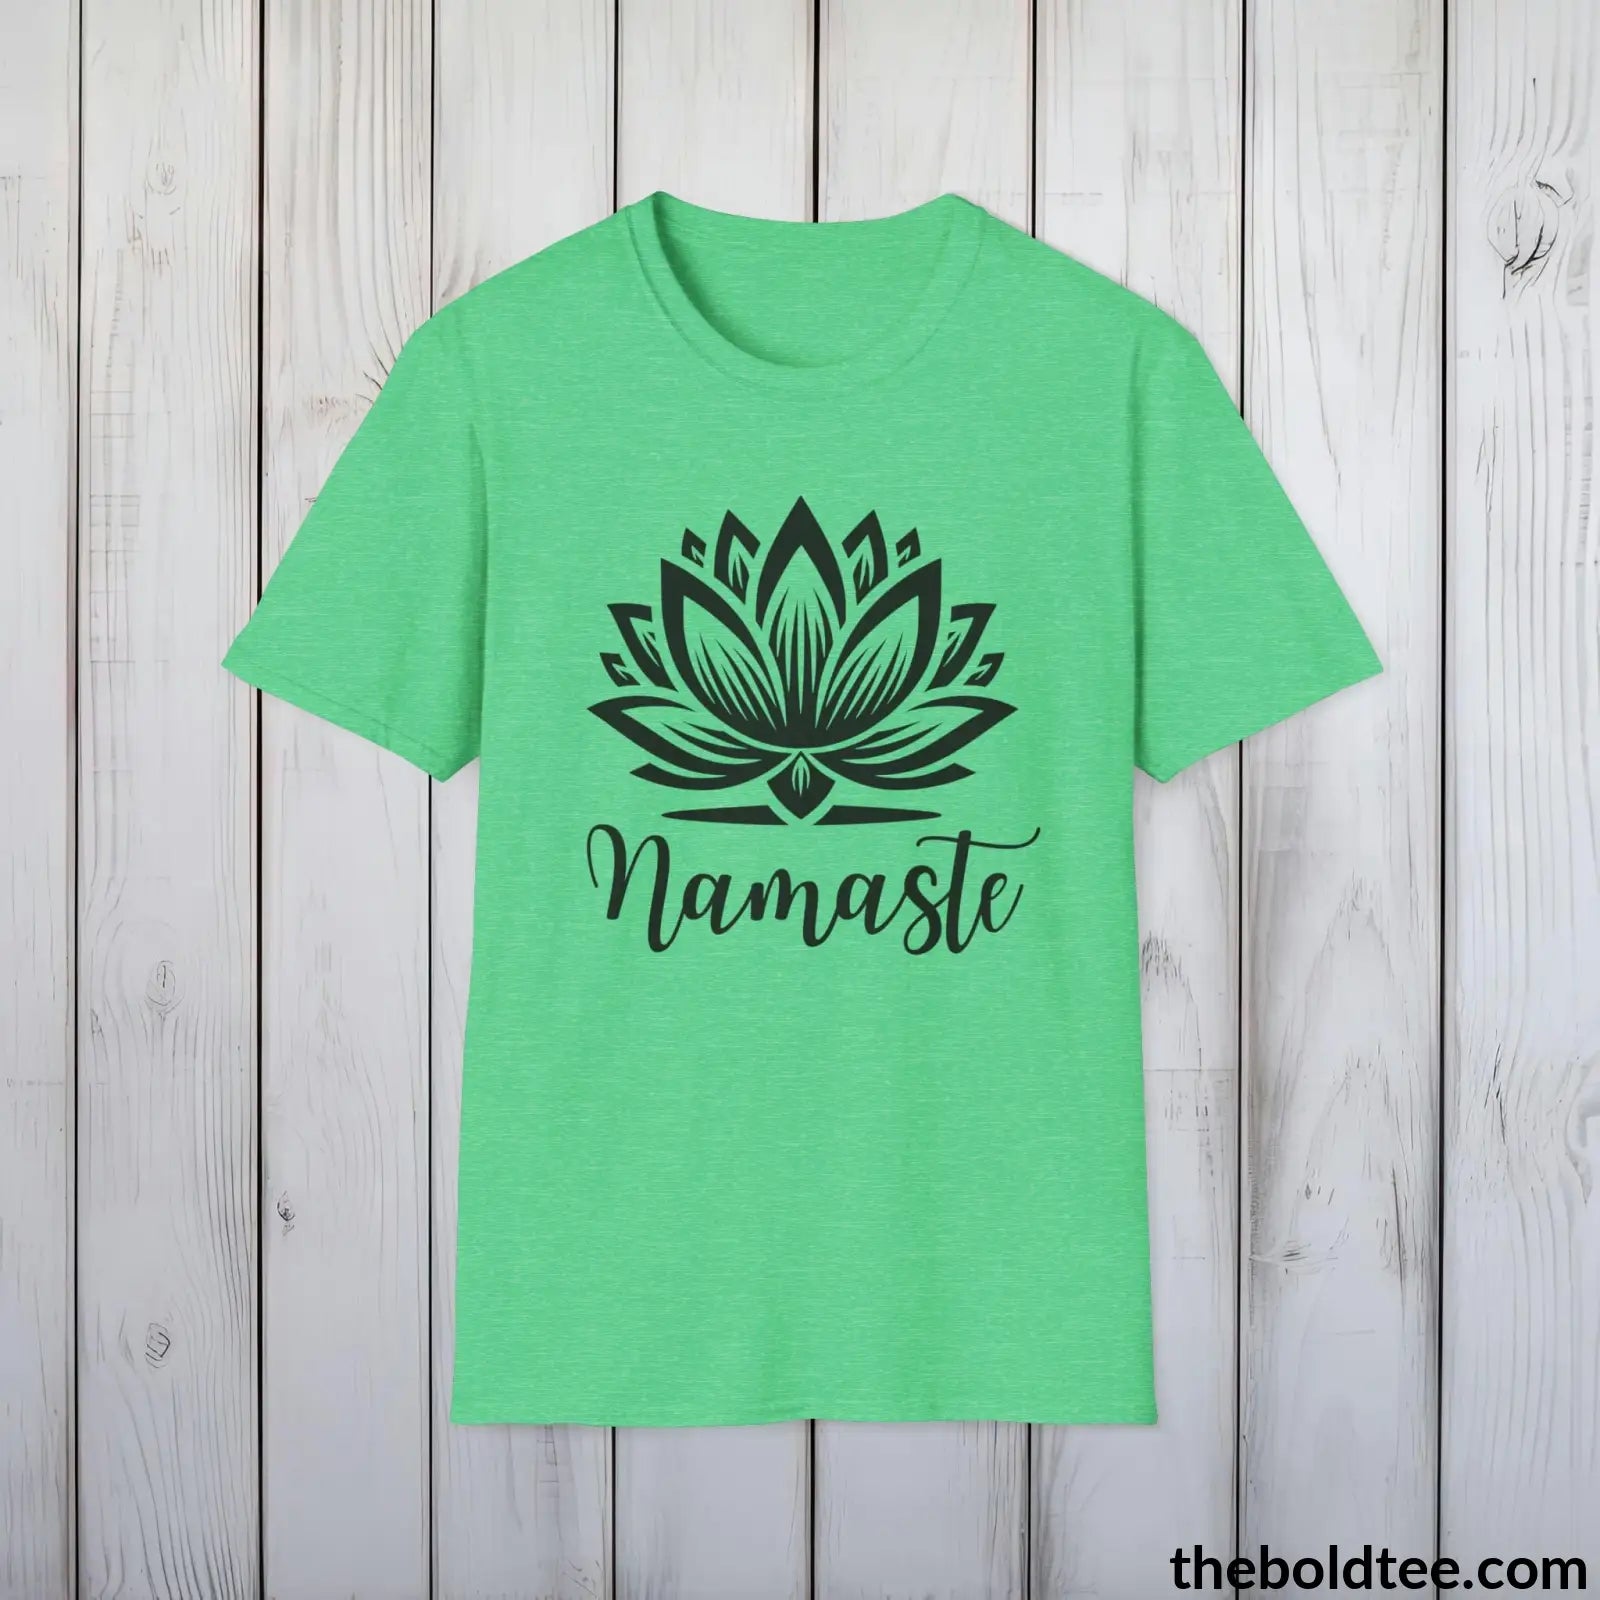 T-Shirt Heather Irish Green / S Namaste Yoga Tee - Sustainable & Soft Cotton Crewneck Unisex T-Shirt - 9 Bold Colors